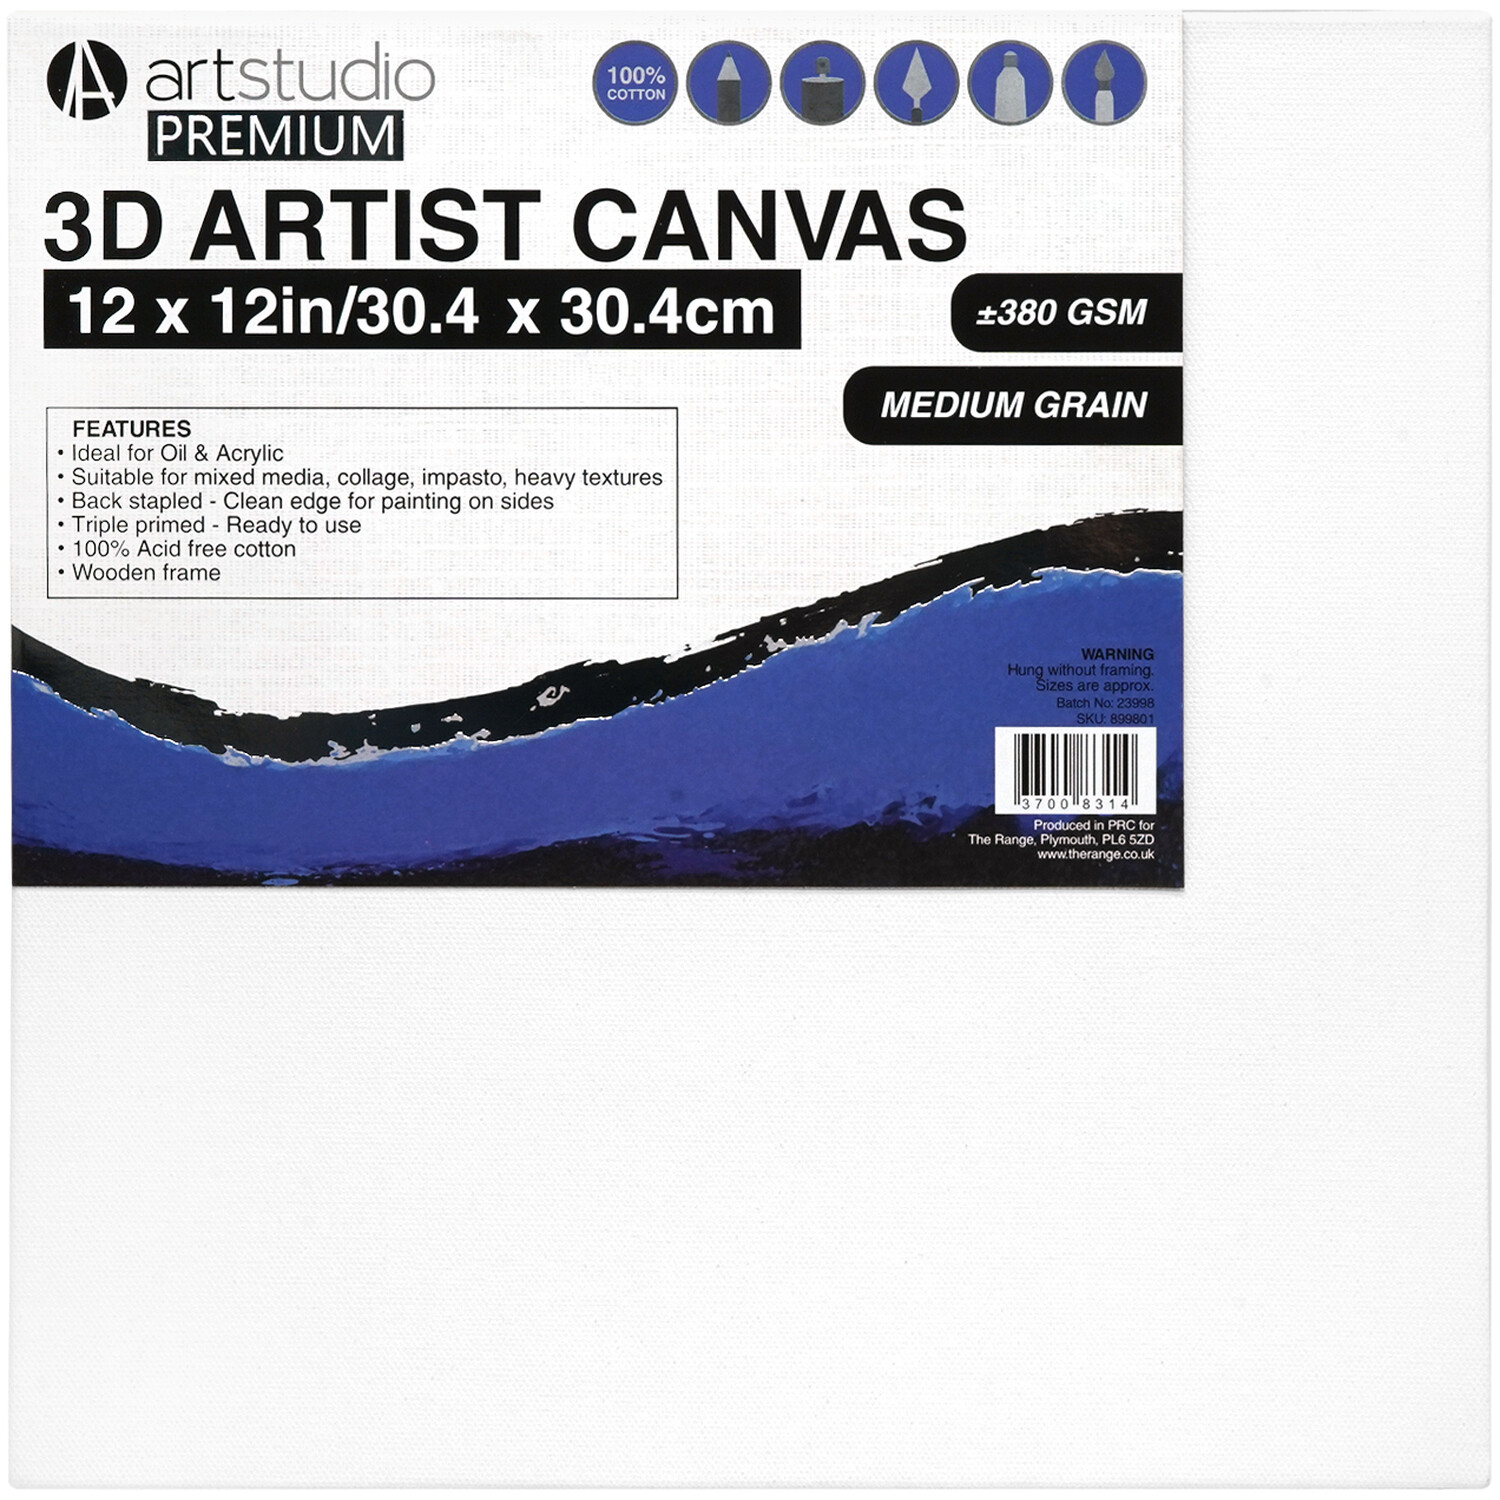 Art Studio Premium 3D Artist Canvas 30.4 x 30.4cm Image 1